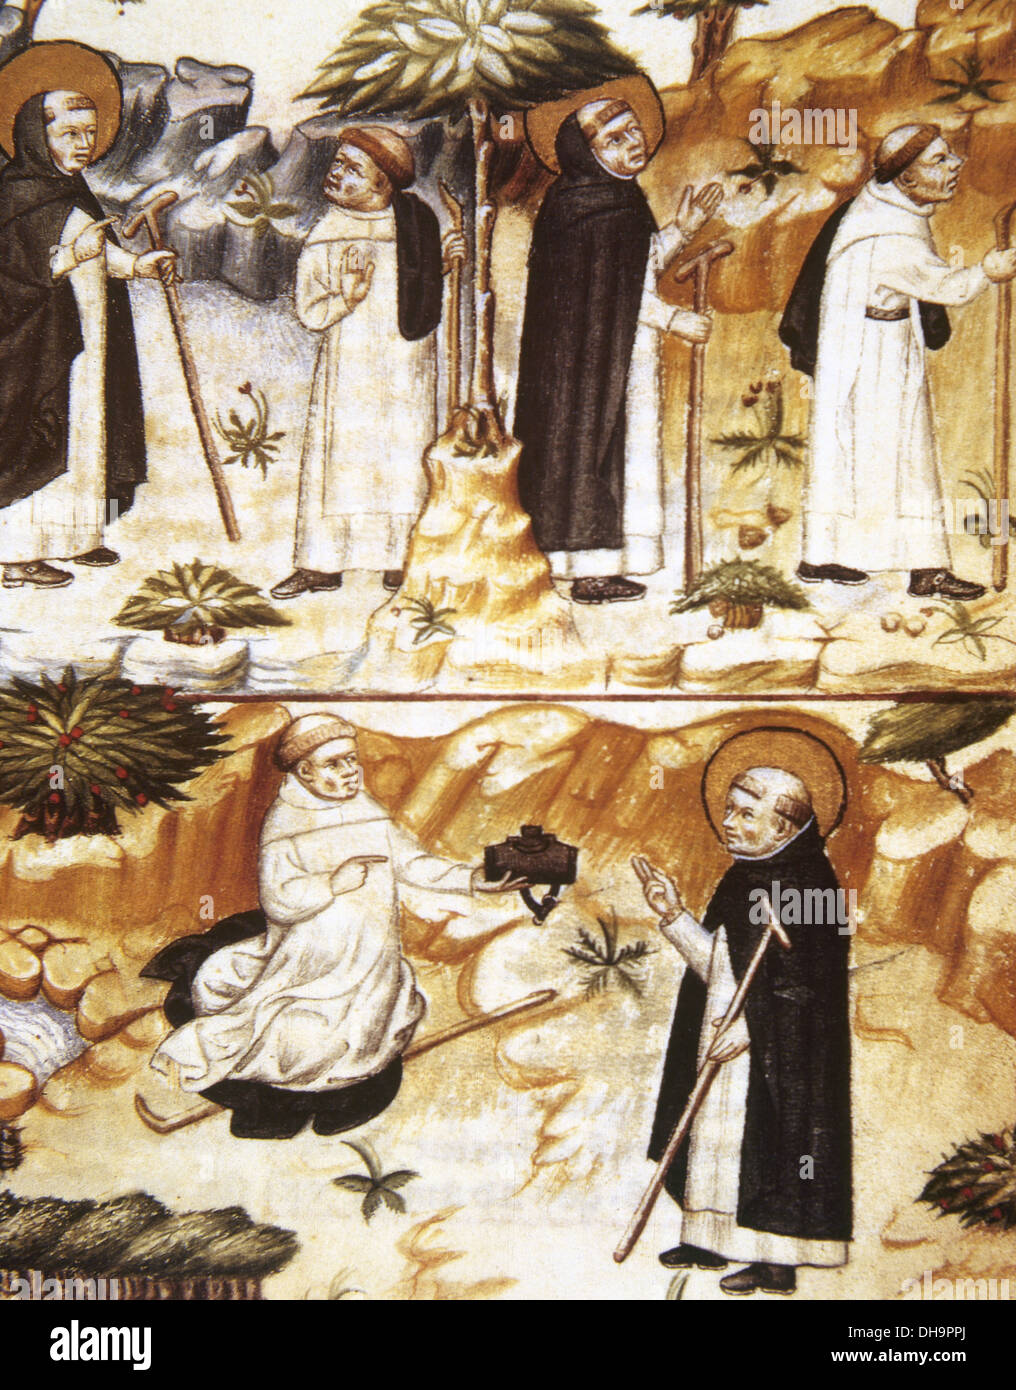 Edad media. La vida monástica. Episodios de la vida de Santo Domingo. Miniatura en 'Theologia varia de los siglos XIV y XV. Foto de stock